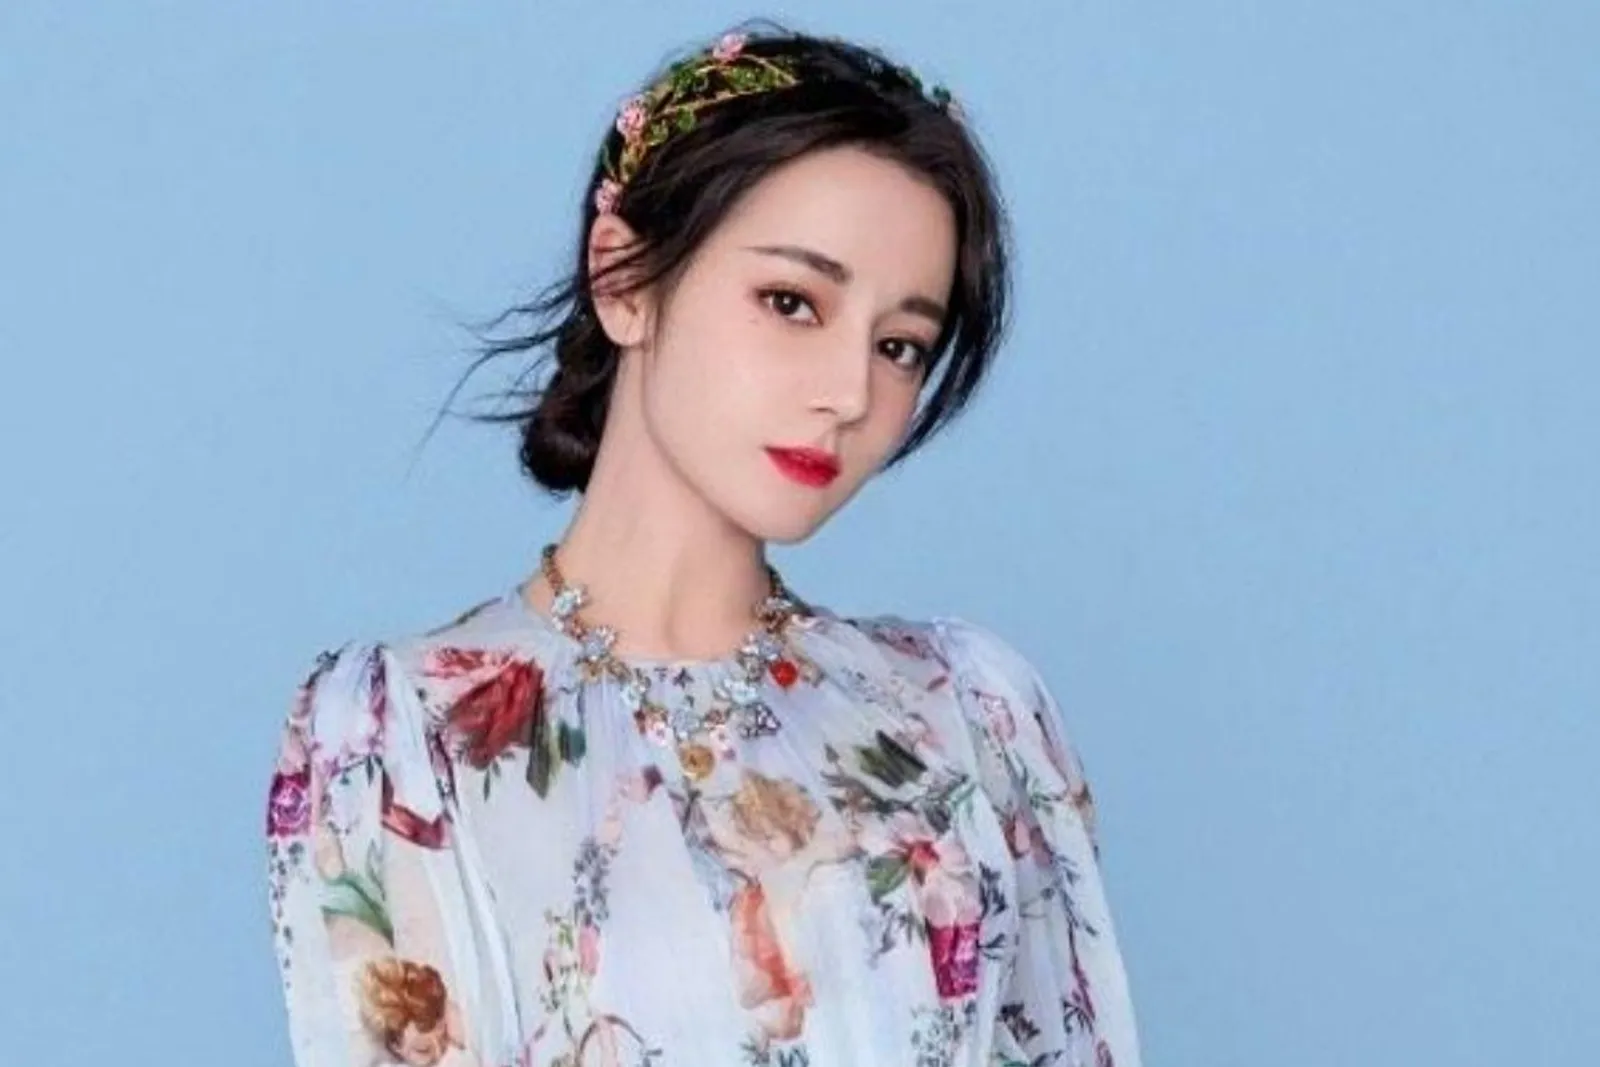 7 Pesona Dilraba Dilmurat, Aktris Tiongkok yang Sering Beradegan Intim